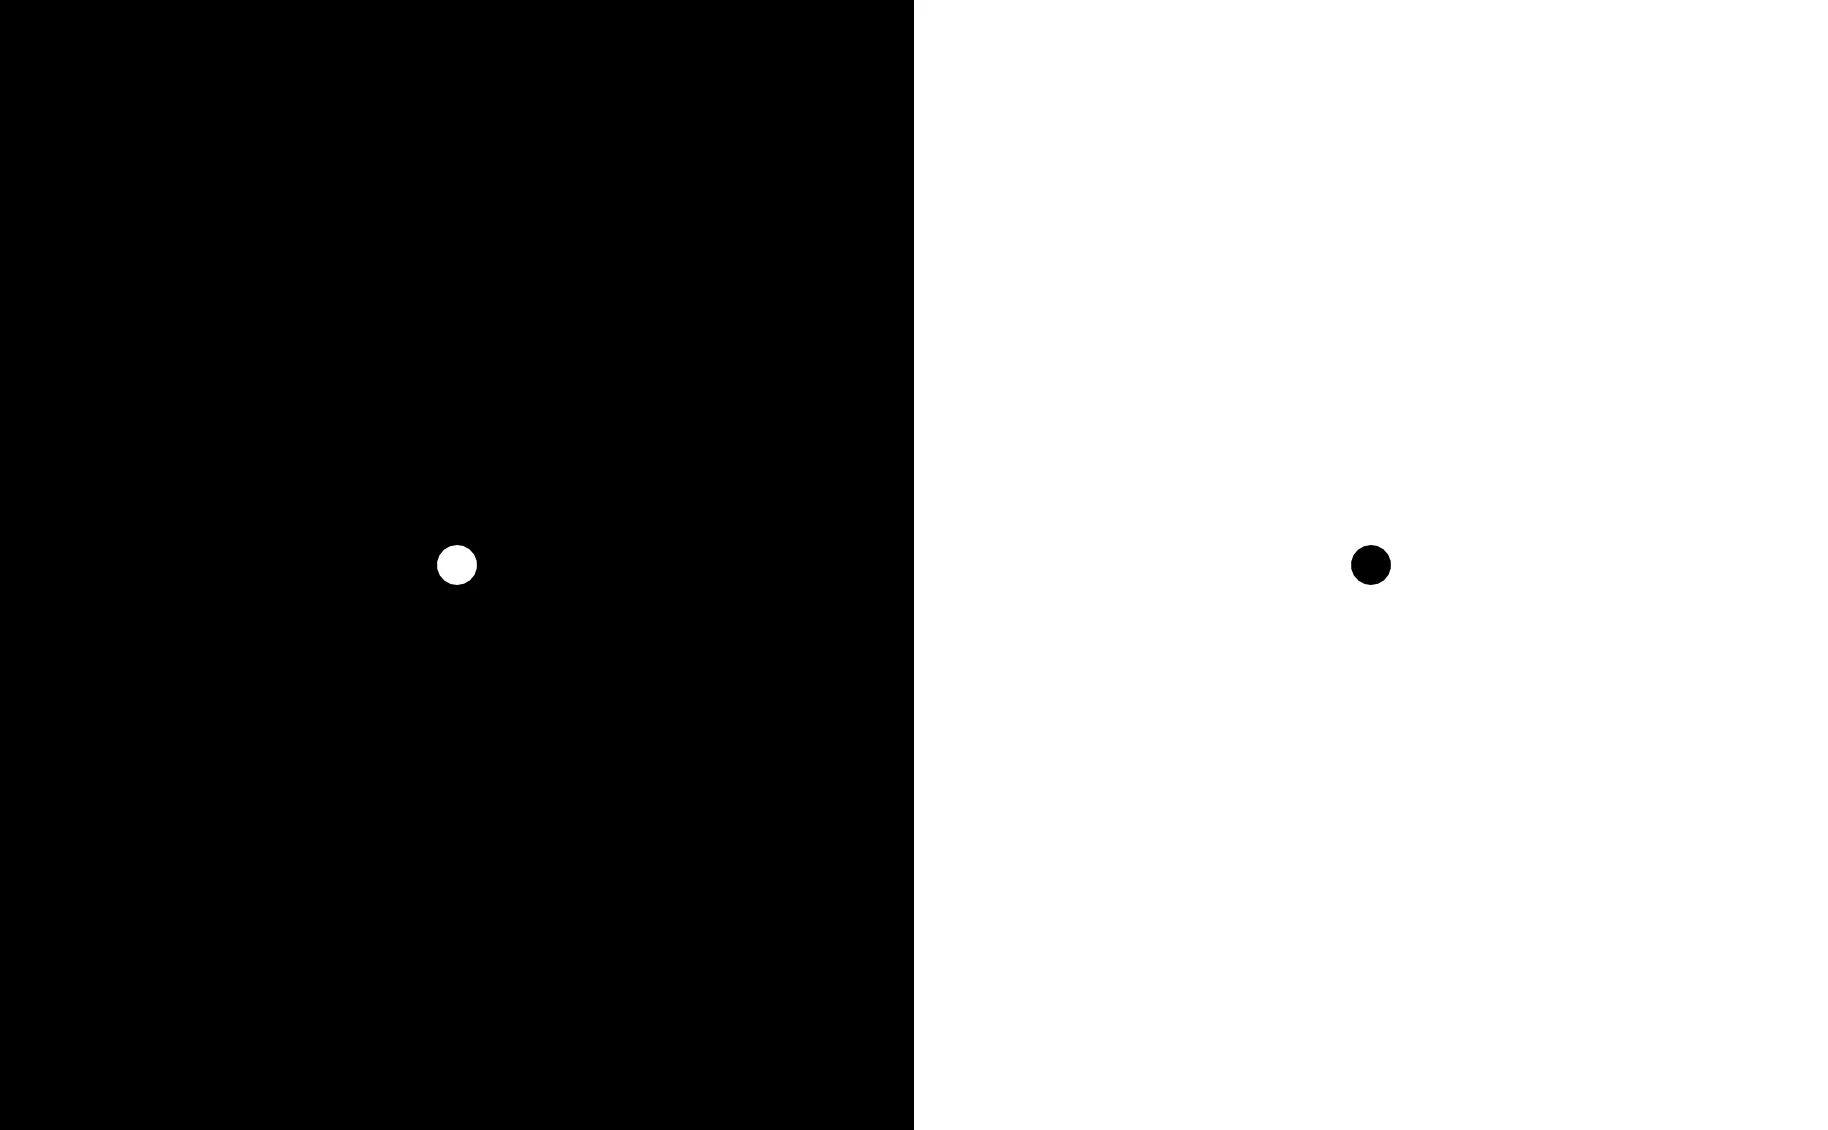 Найти центр экрана. Чёрный фон с белыми точками. Белая тачка на черном фоне. Черный фон с точками.